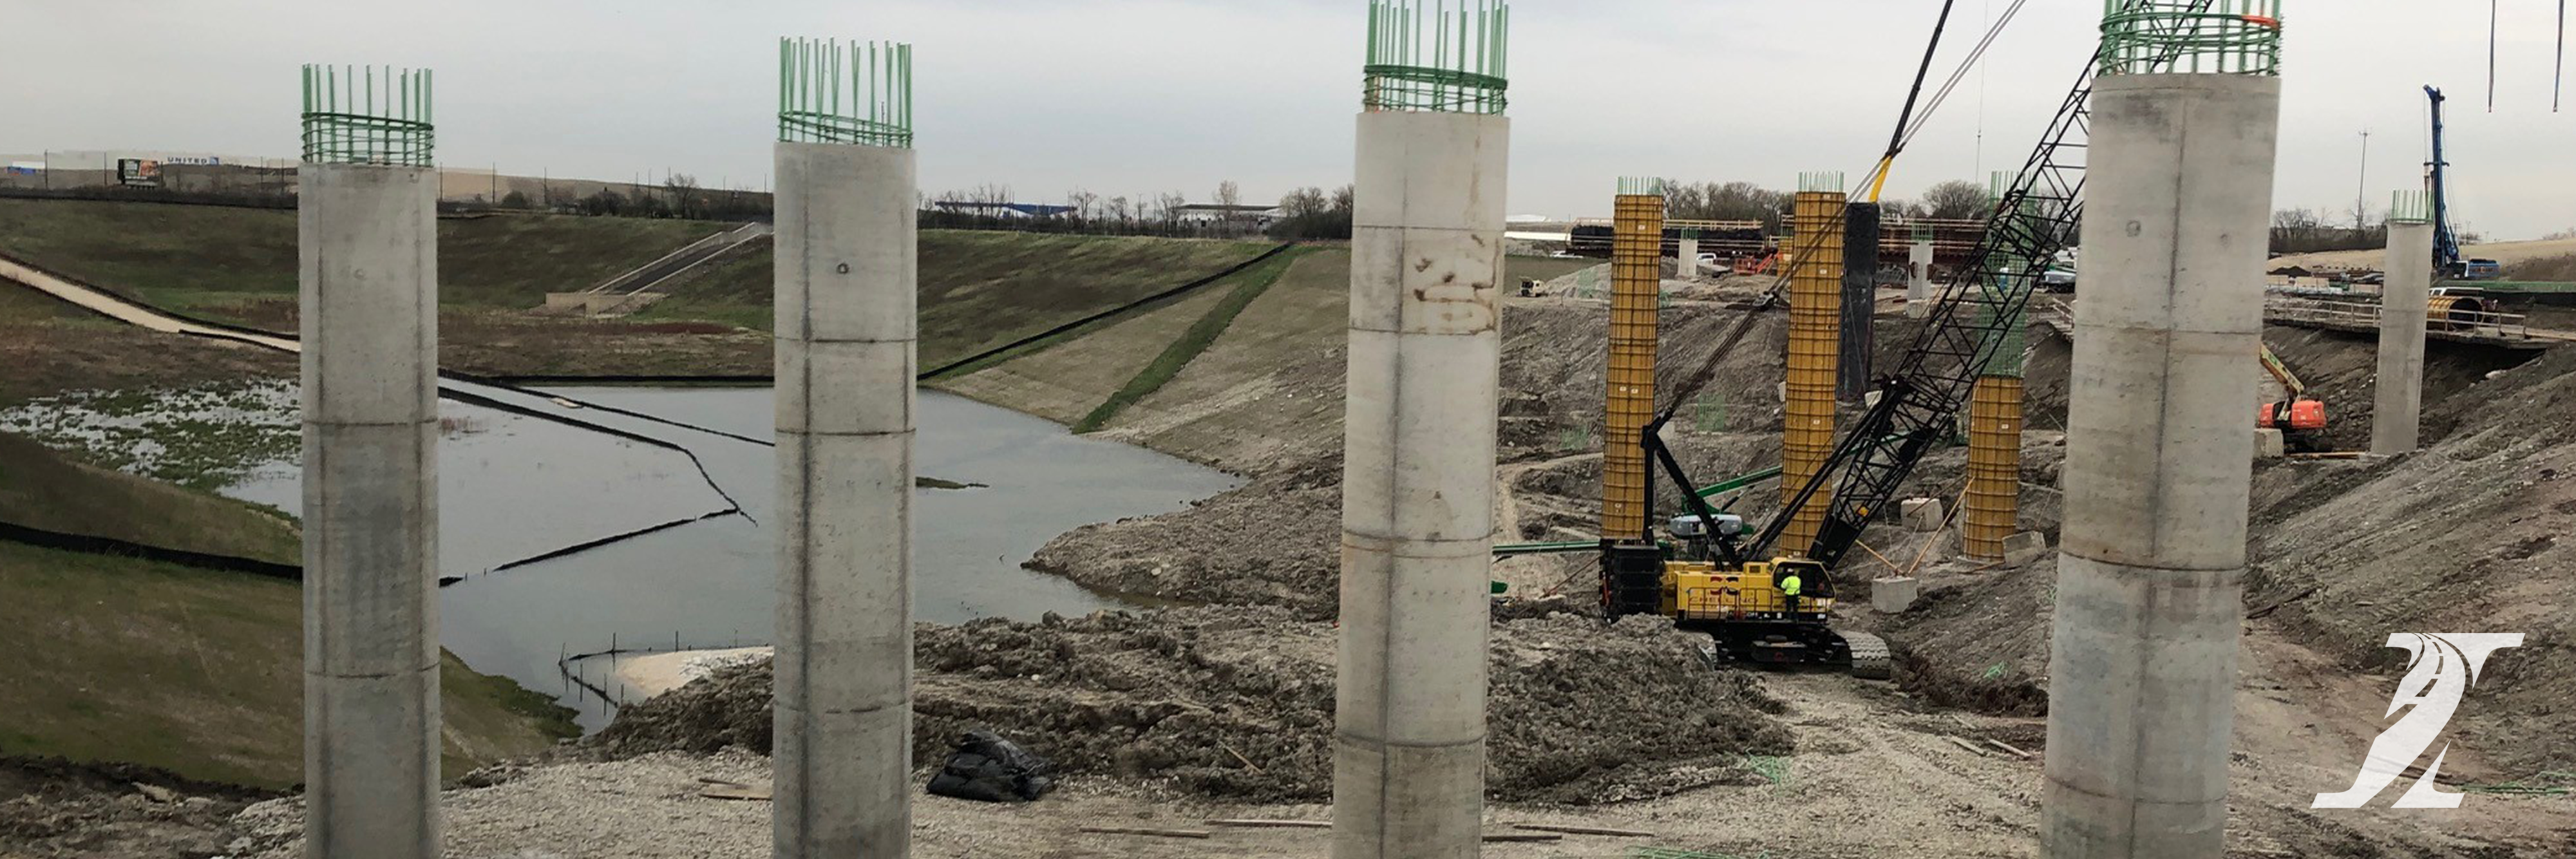 Illinois Tollways 2022 construction grabbing headlines